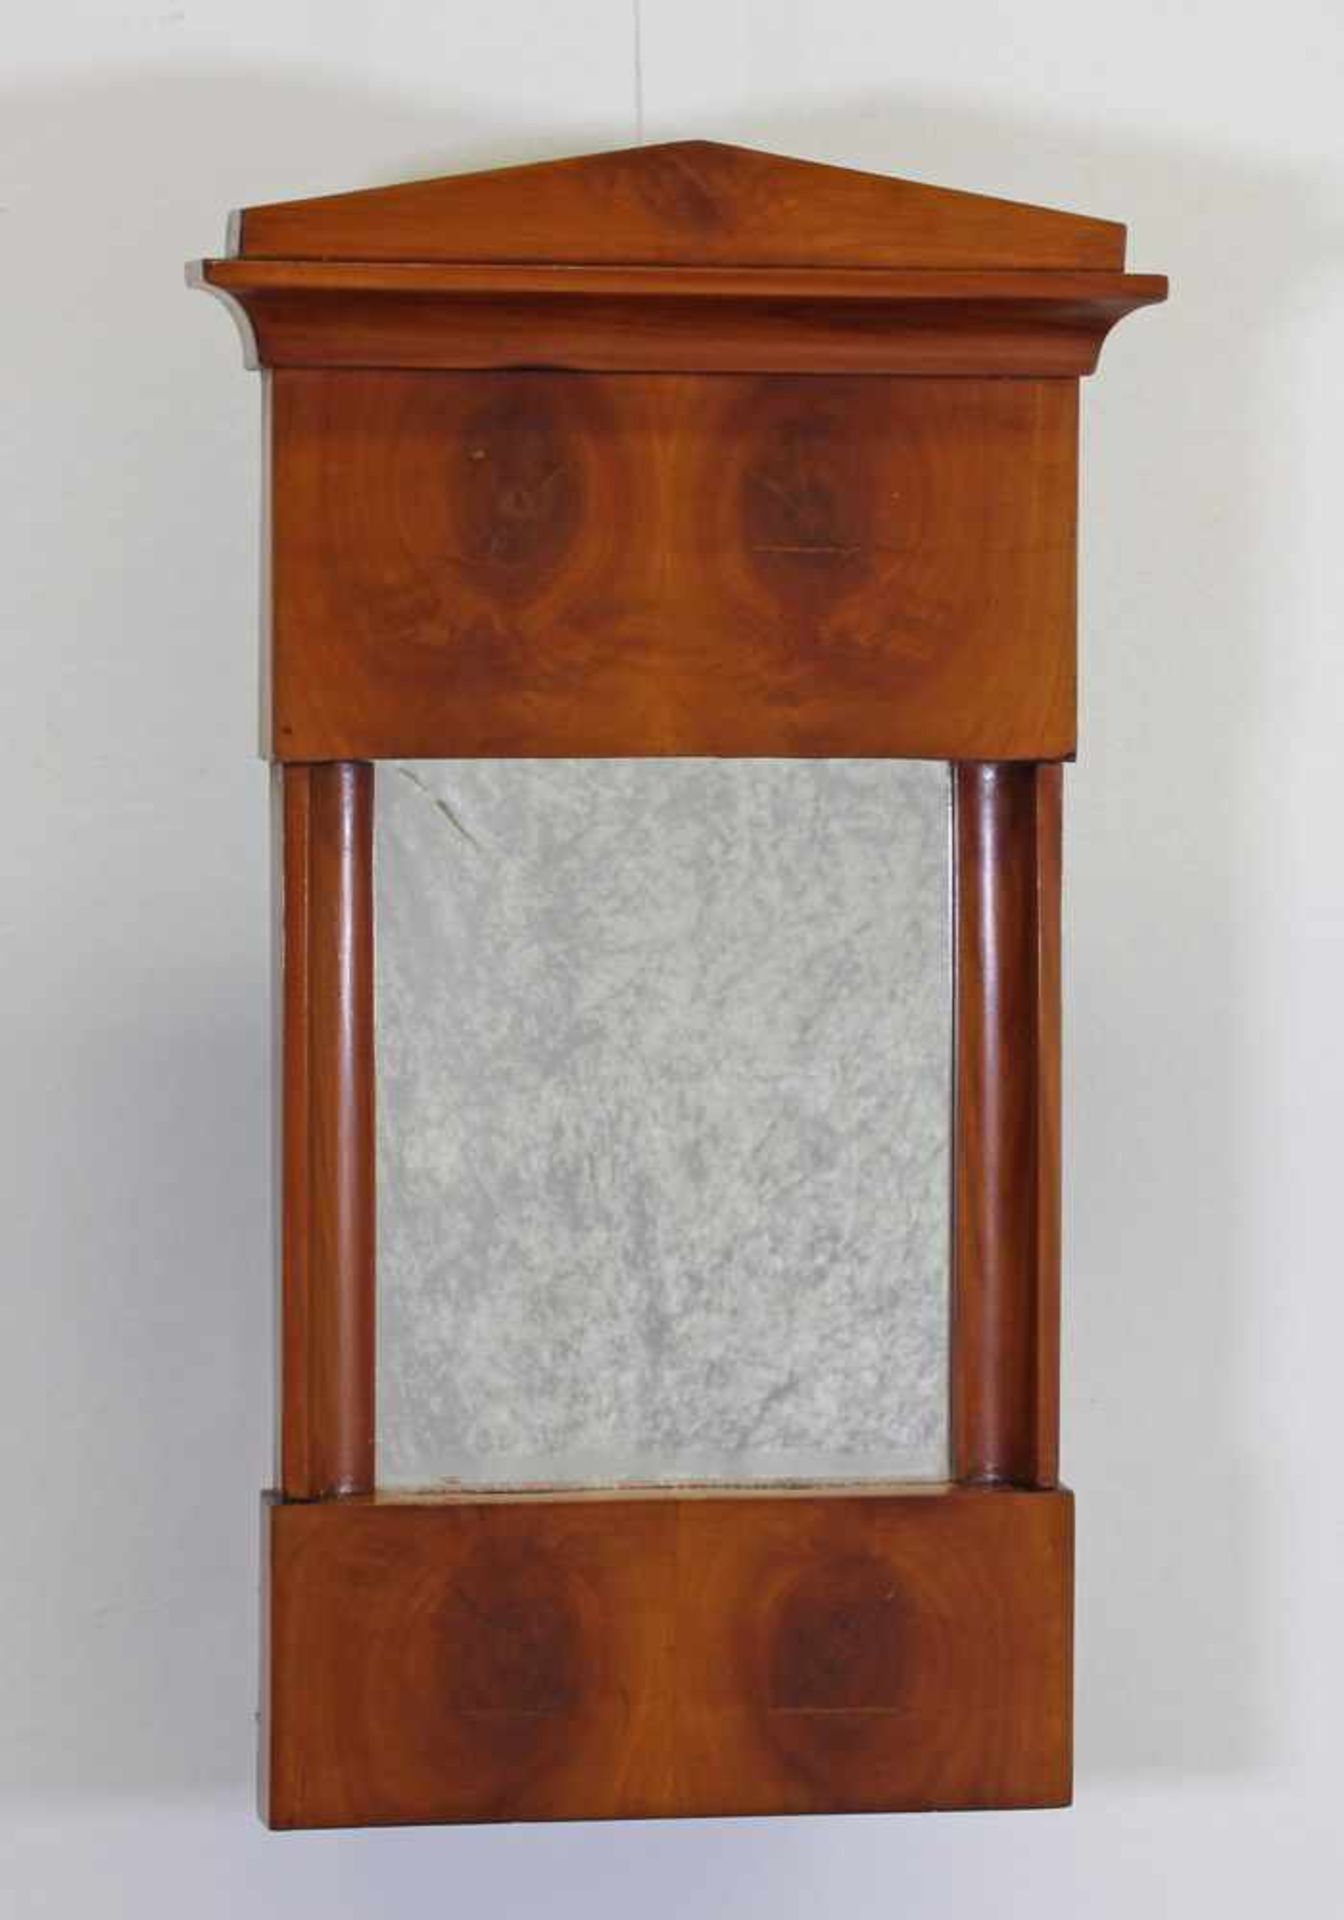 Spiegel, Biedermeier, um 1820, Kirschbaum, 61 x 35 cm- - -25.00 % buyer's premium on the hammer - Image 2 of 2